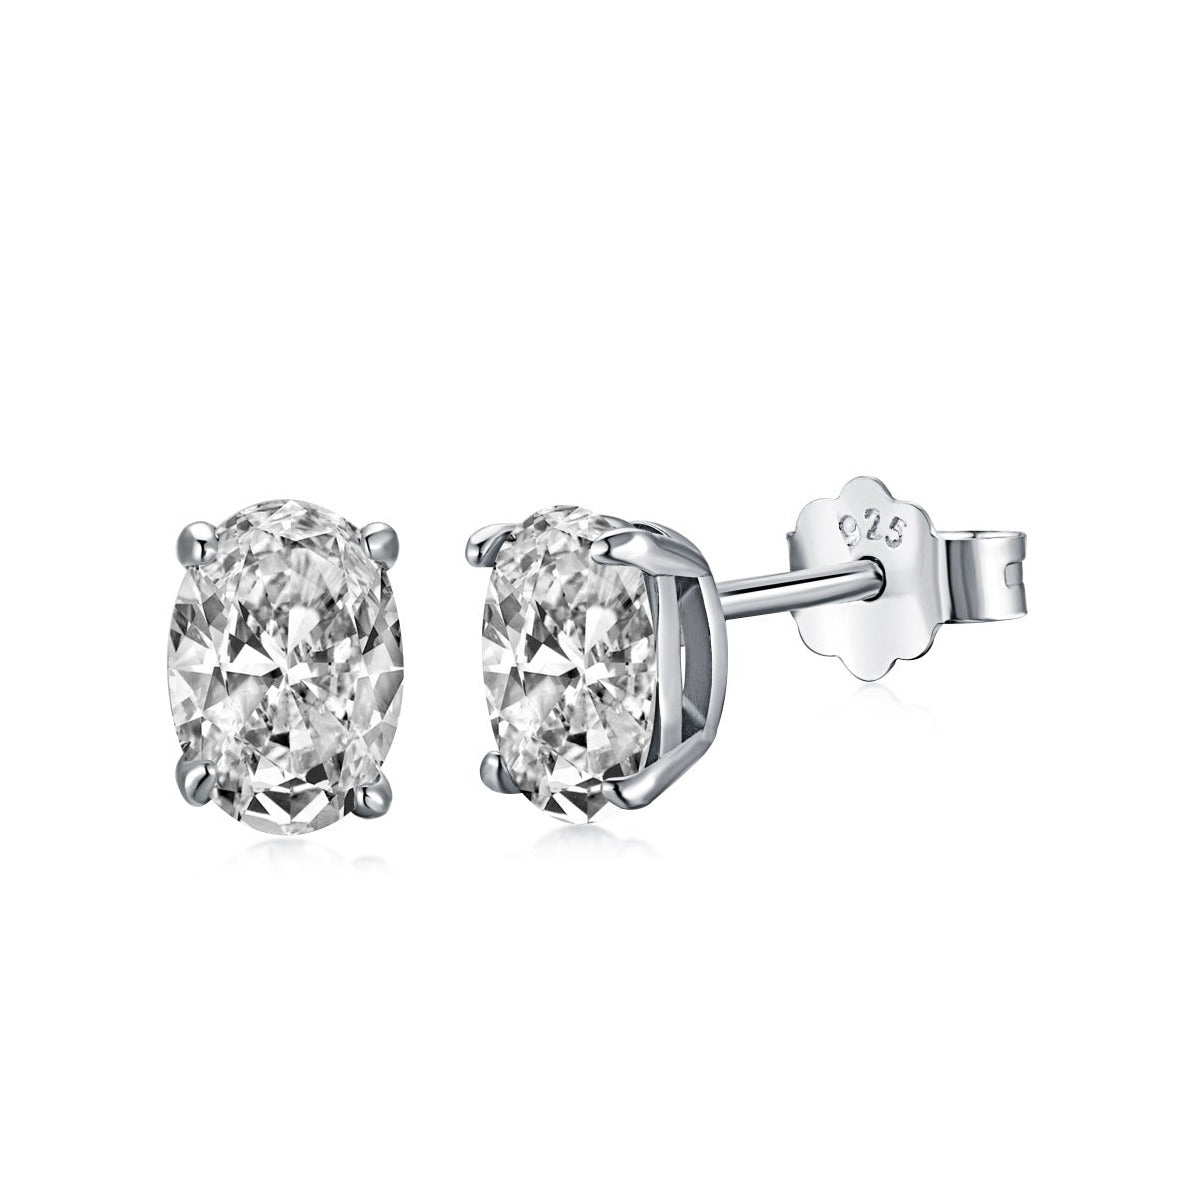 Sterling Silver Nala Oval Cut Diamond Earrings - Luxora London